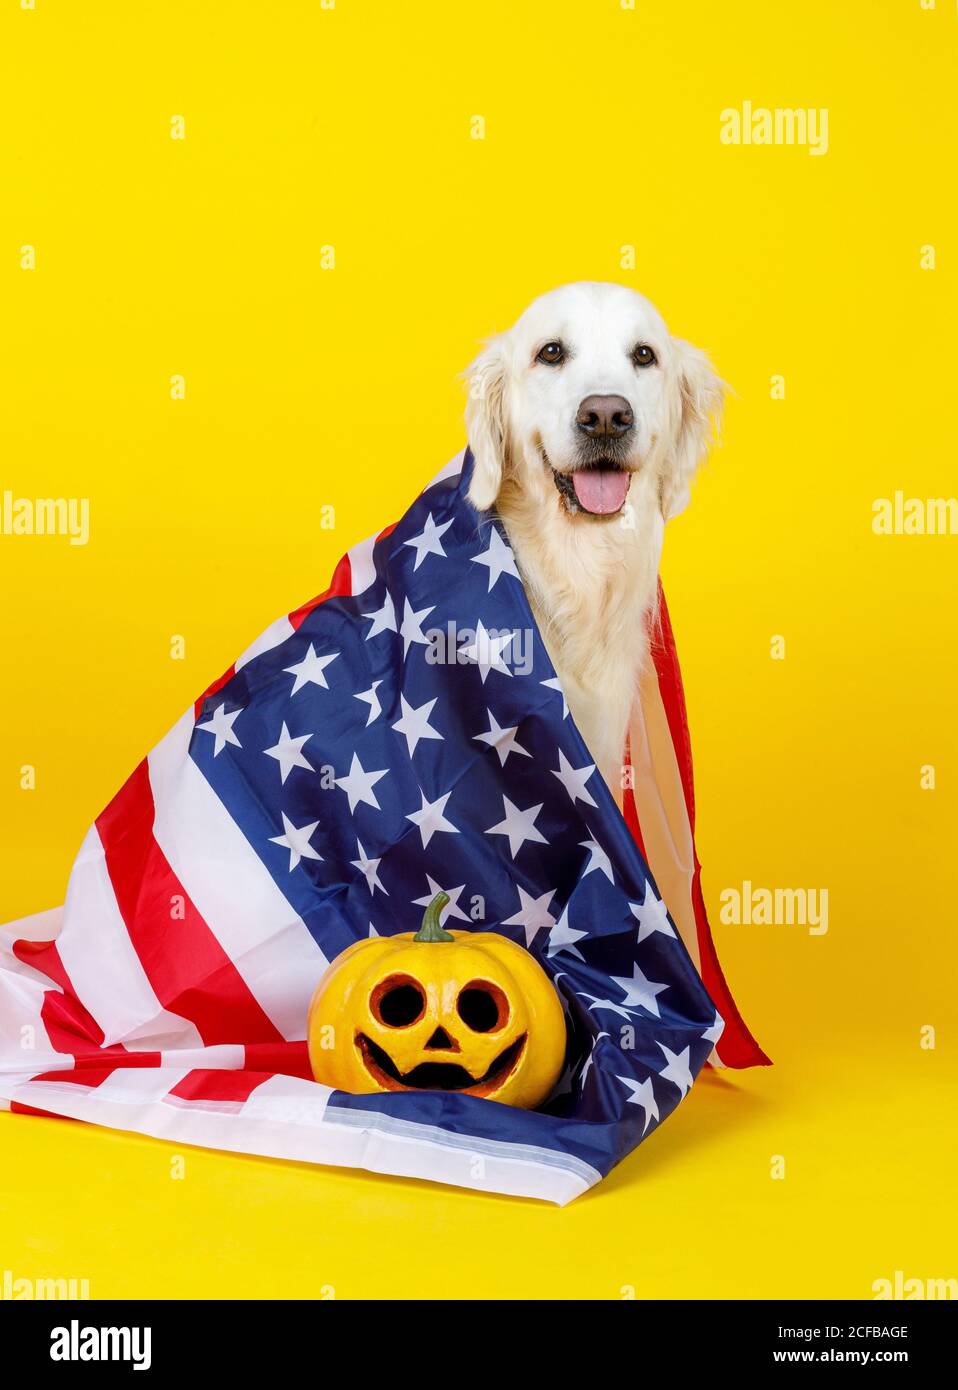 Bandiera americana su soffice cane bianco carino con occhi gentili e la zucca di faccia arancione nelle vicinanze Foto Stock